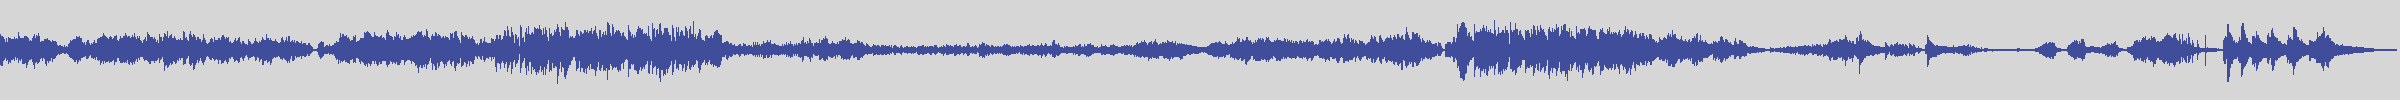 big_music_classic [BMC009] Claude Debussy, Corrado Rossi - Pour Le Piano: Prelude [] audio wave form